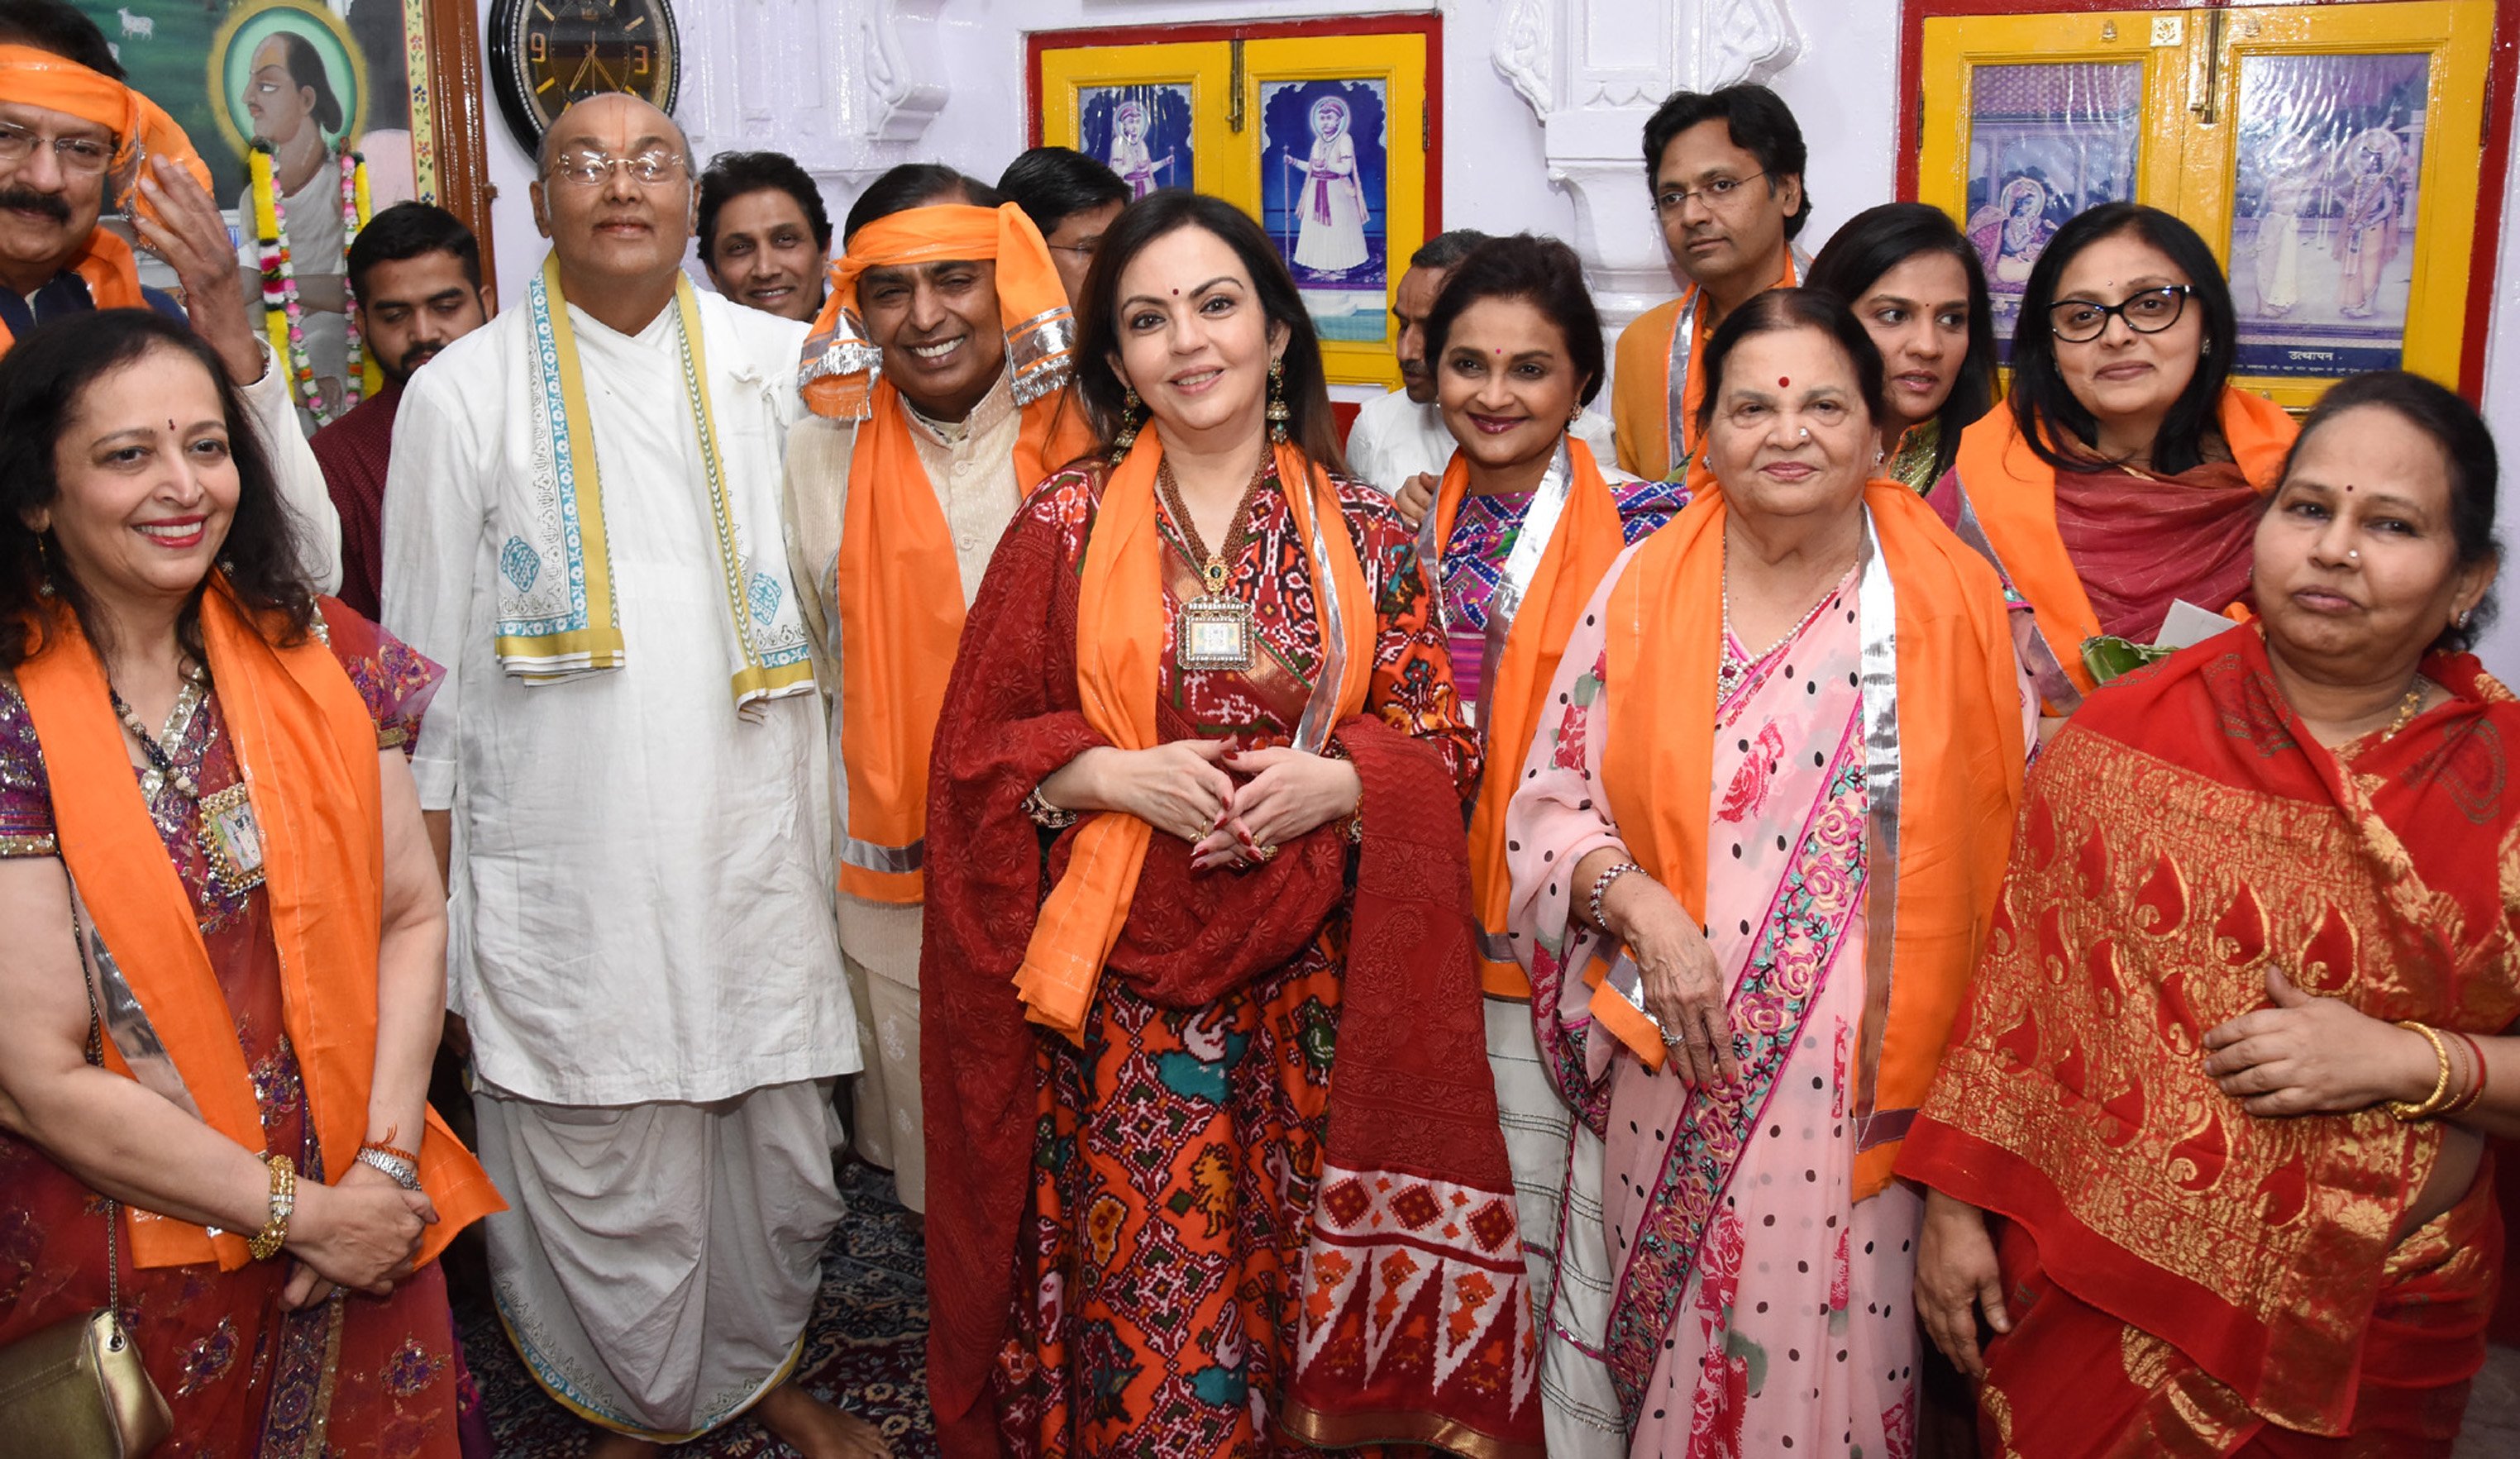 mukesh ambani at nathdwara | रिलाइंस ग्रुप के प्रमुख मुकेश अम्बानी ने  श्रीजी को दिया बेटी की शादी का न्योता | Patrika News